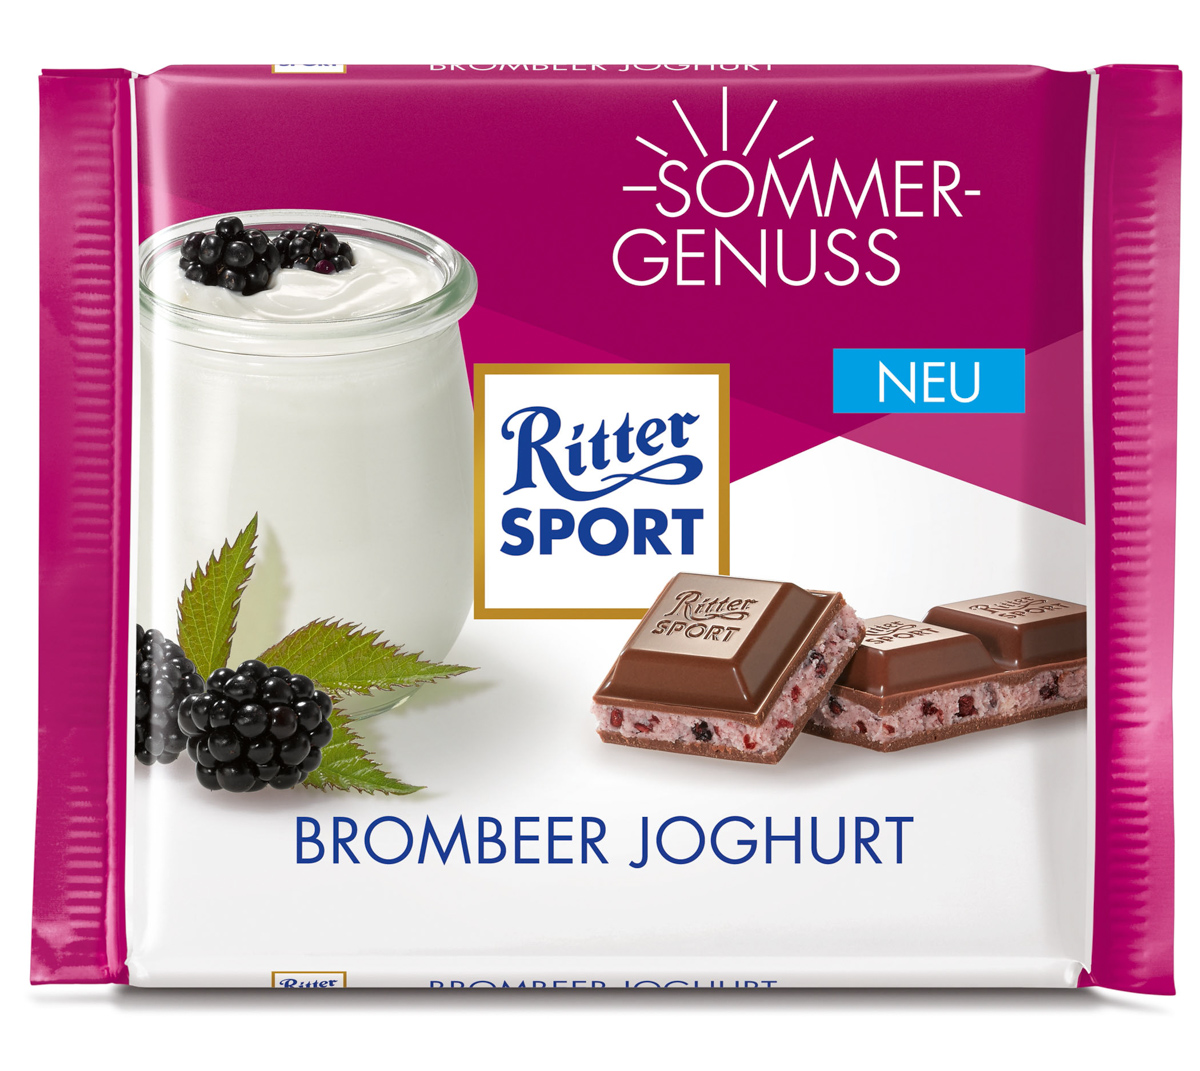 Brombeer Joghurt, Buttermilch-Zitrone und Eiscafé | Brandenstein ...